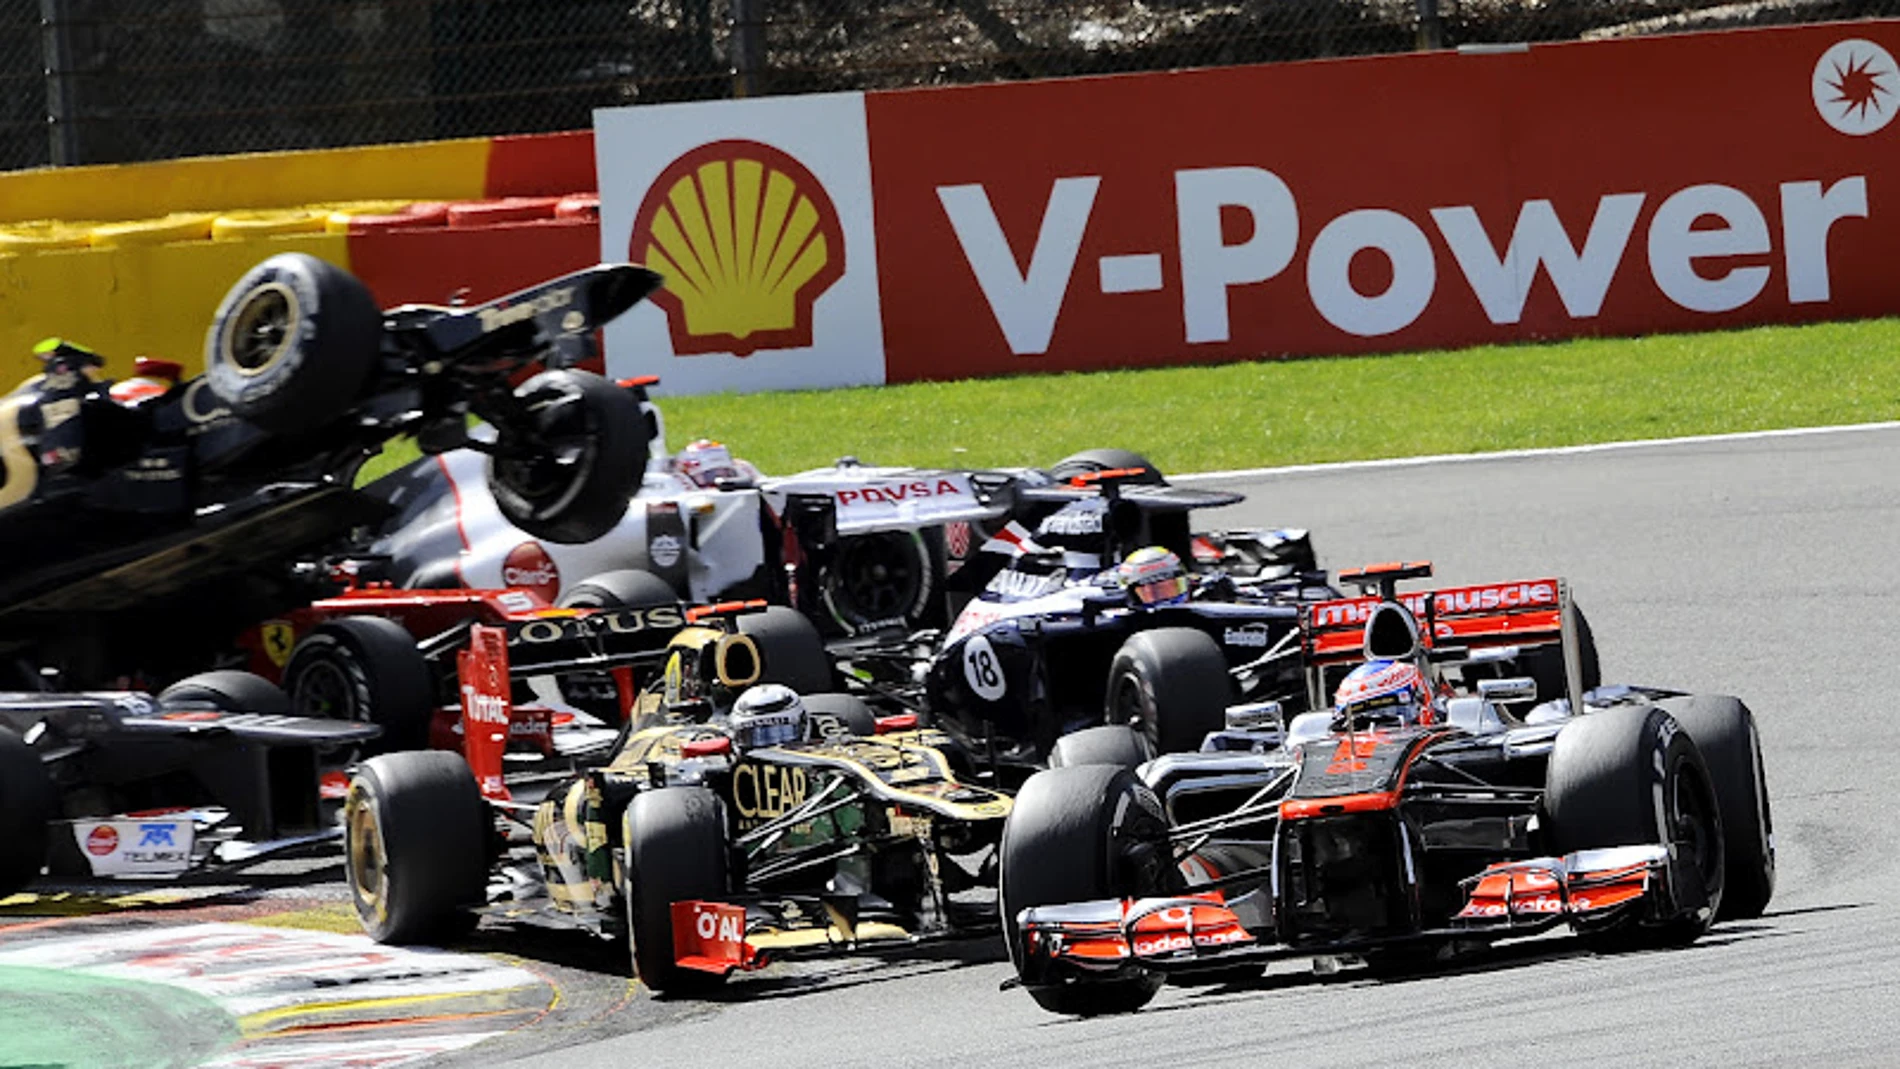 Grosjean pasa por encima de Alonso en la primera curva de Spa